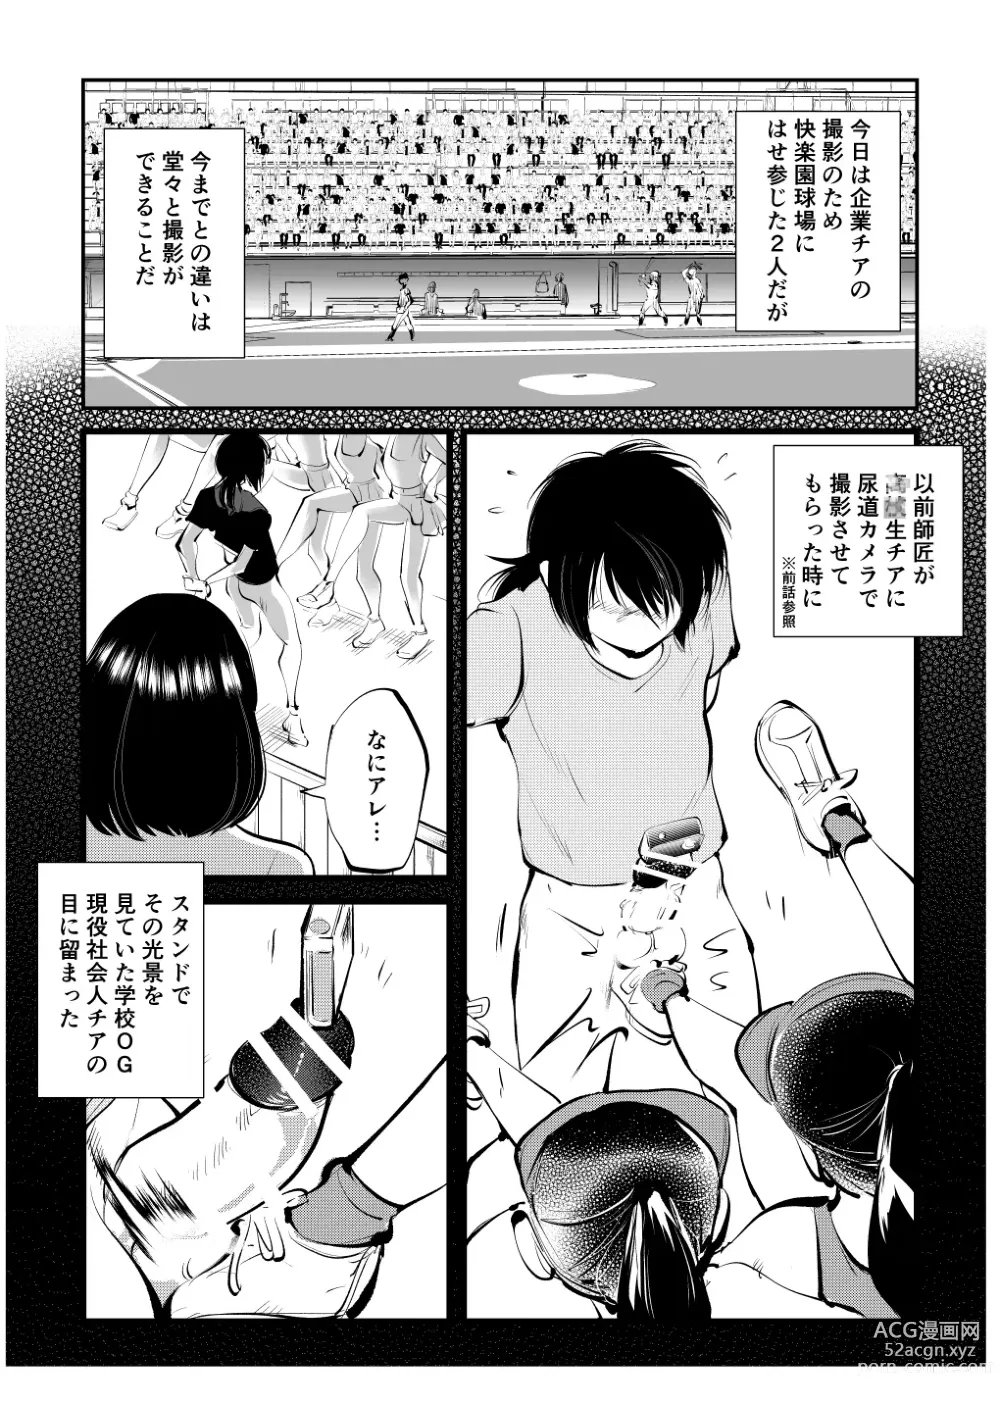 Page 4 of doujinshi Kinkeri Cheer Girl VS Tosatsuma Shakai Hito Cheer Girl-hen